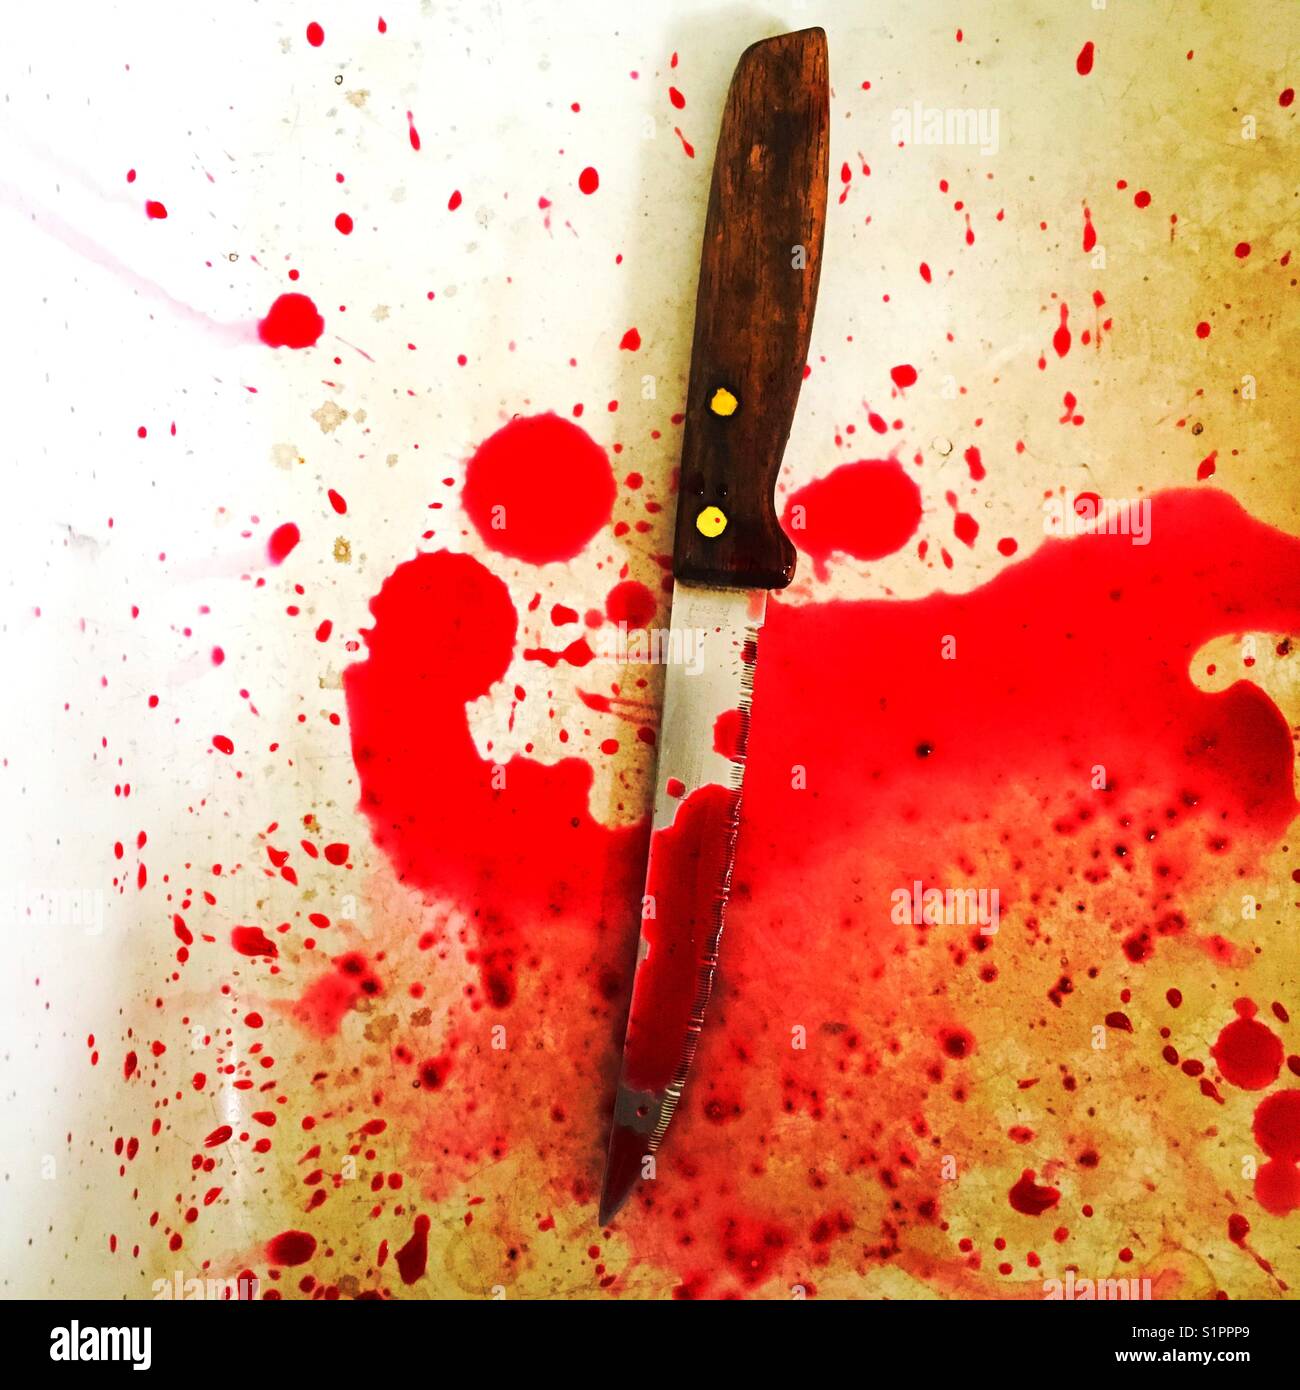 Scharfes Messer mit Blutspritzer-Konzept Stockfoto